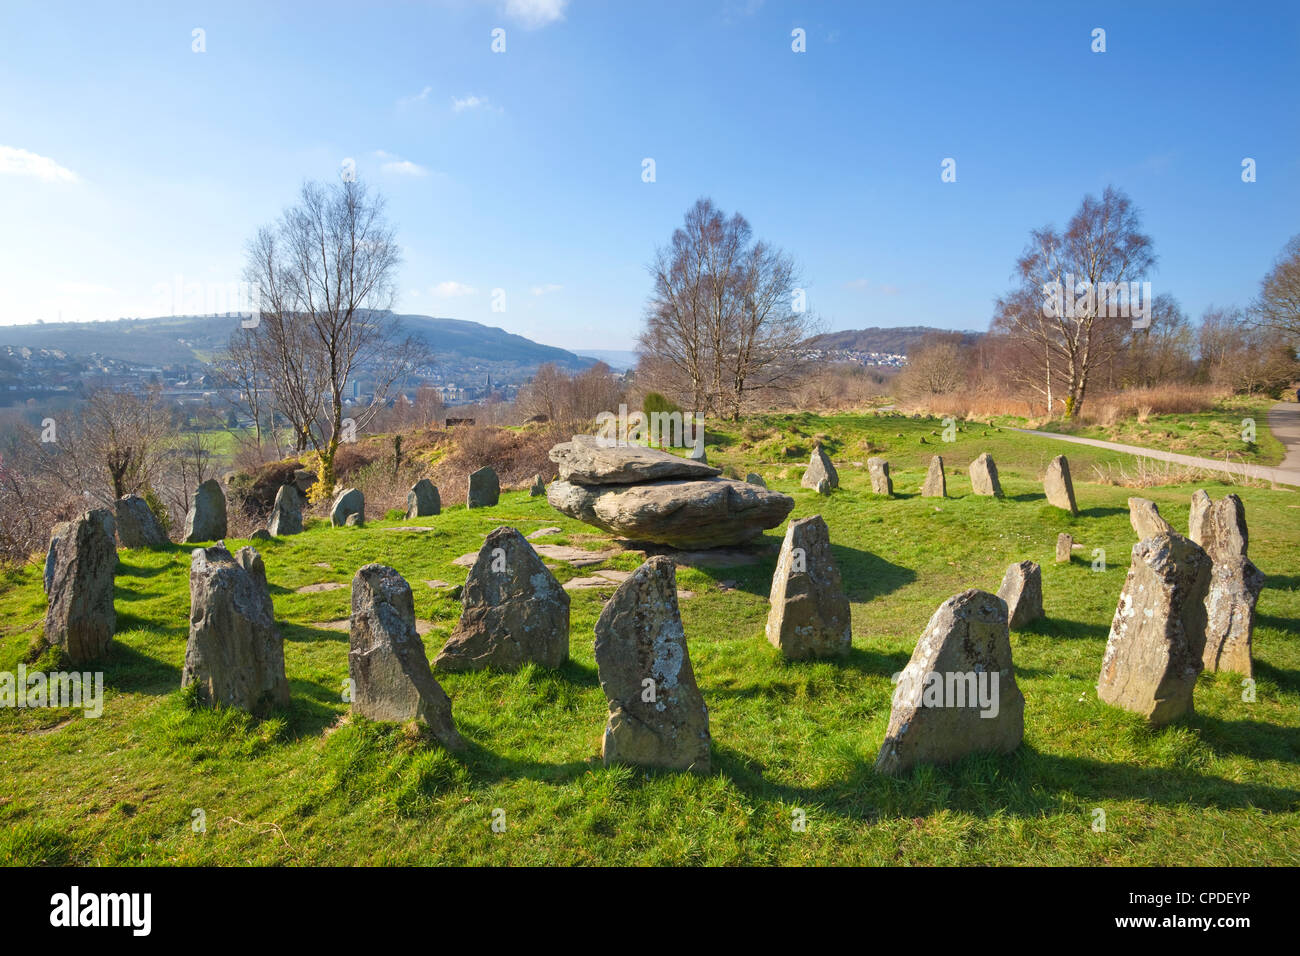 Gorsedd antiguas piedras, Pontypridd, Rhondda, Gales del Sur, el País de Gales, Reino Unido, Europa Foto de stock